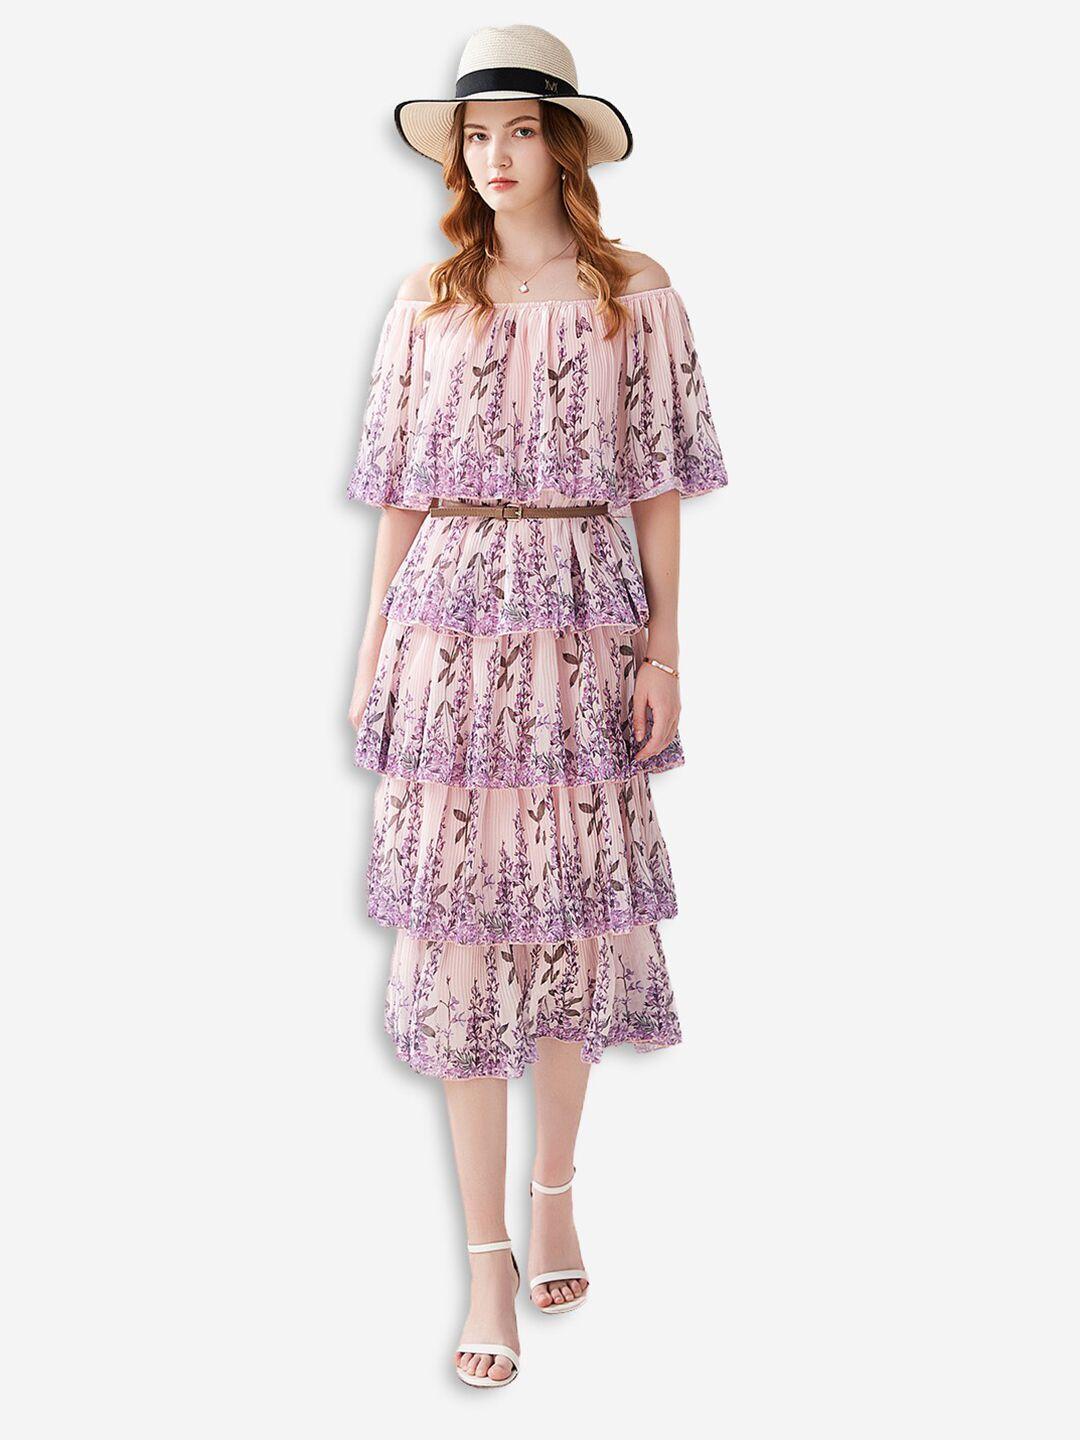 jc-collection-pink-floral-off-shoulder-blouson-dress